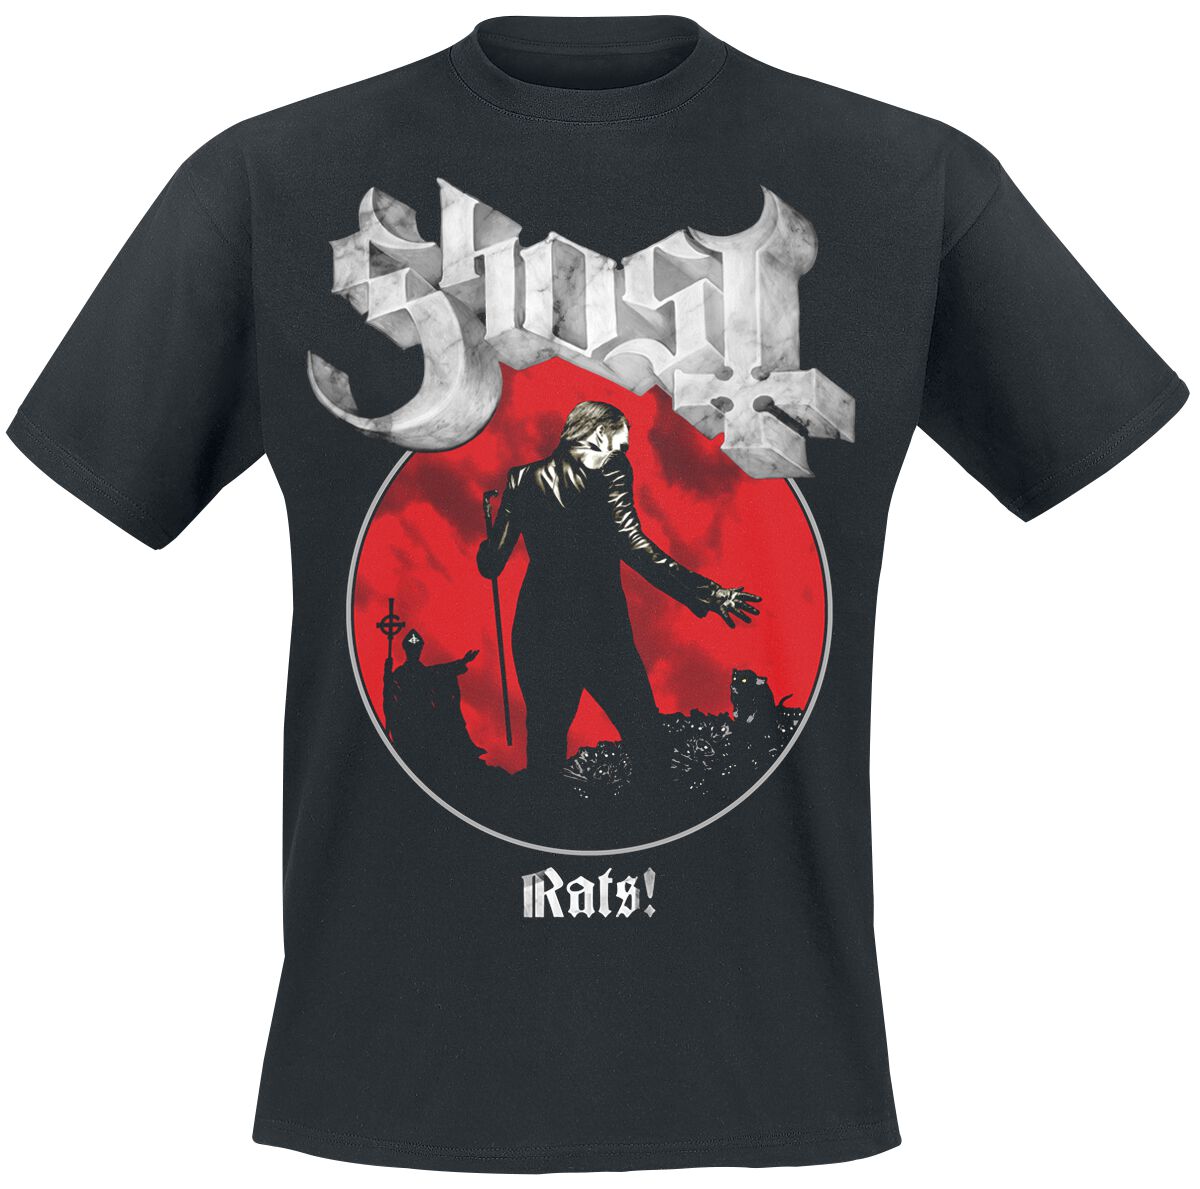 Ghost T-Shirt - Rats Admat - S bis XXL - für Männer - Größe M - schwarz  - Lizenziertes Merchandise!